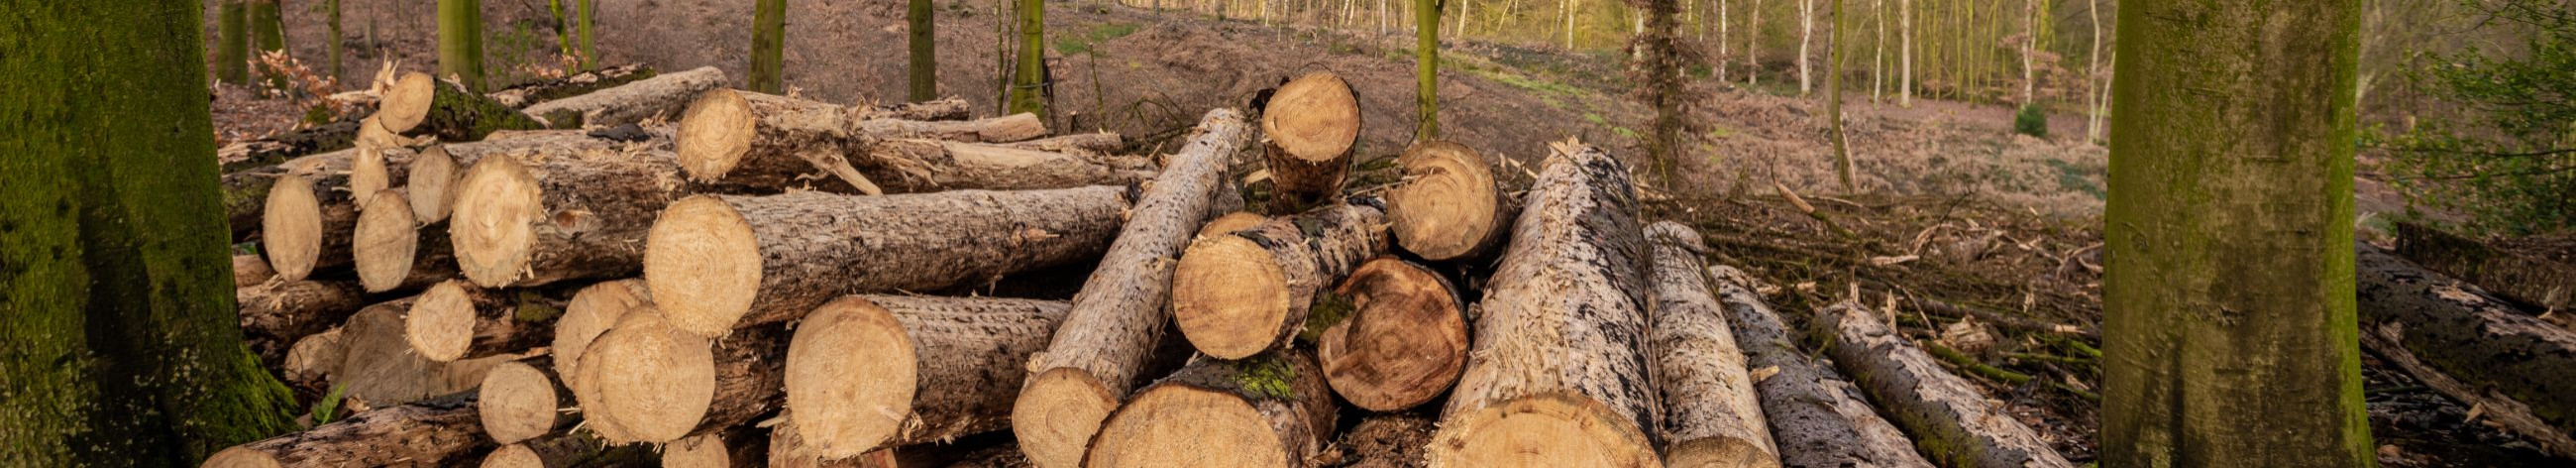 Tegutseme puidu- ja metsandusvaldkonnas alates aastast 2008. alustasime hakkepuidu tootmisega, kuid oleme aja jooksul arenenud metsahooldusteenuse ning metsakultuuride rajamise teenuse pakkujaks.